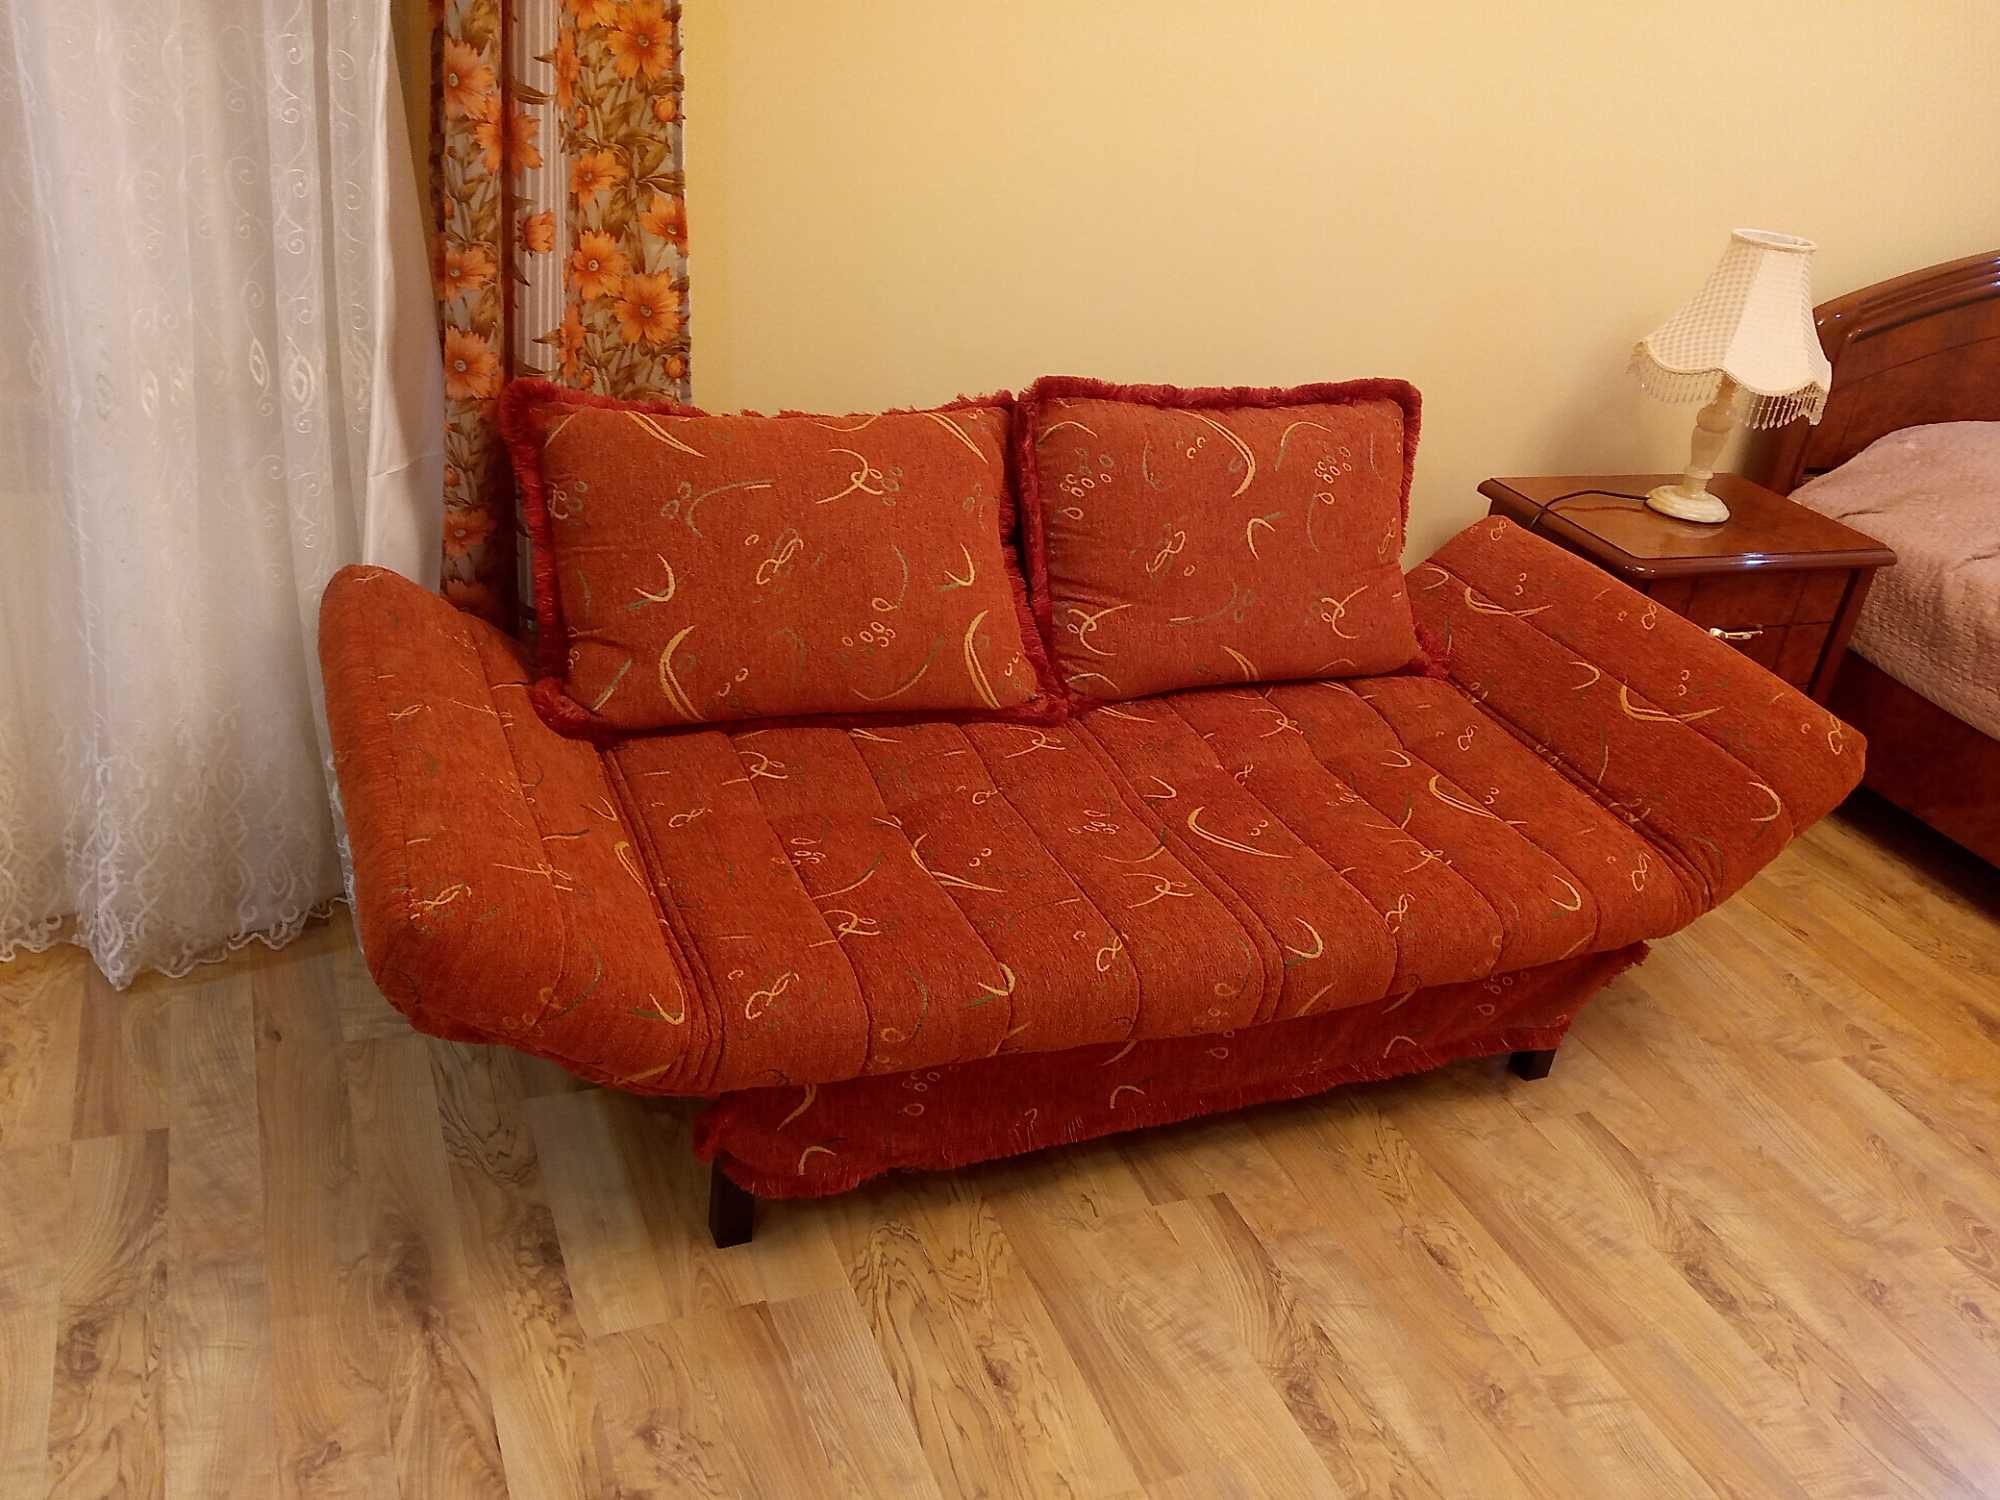 Компактный удобный диван кровать 2 вида.Размер 200х80см и 190х117см